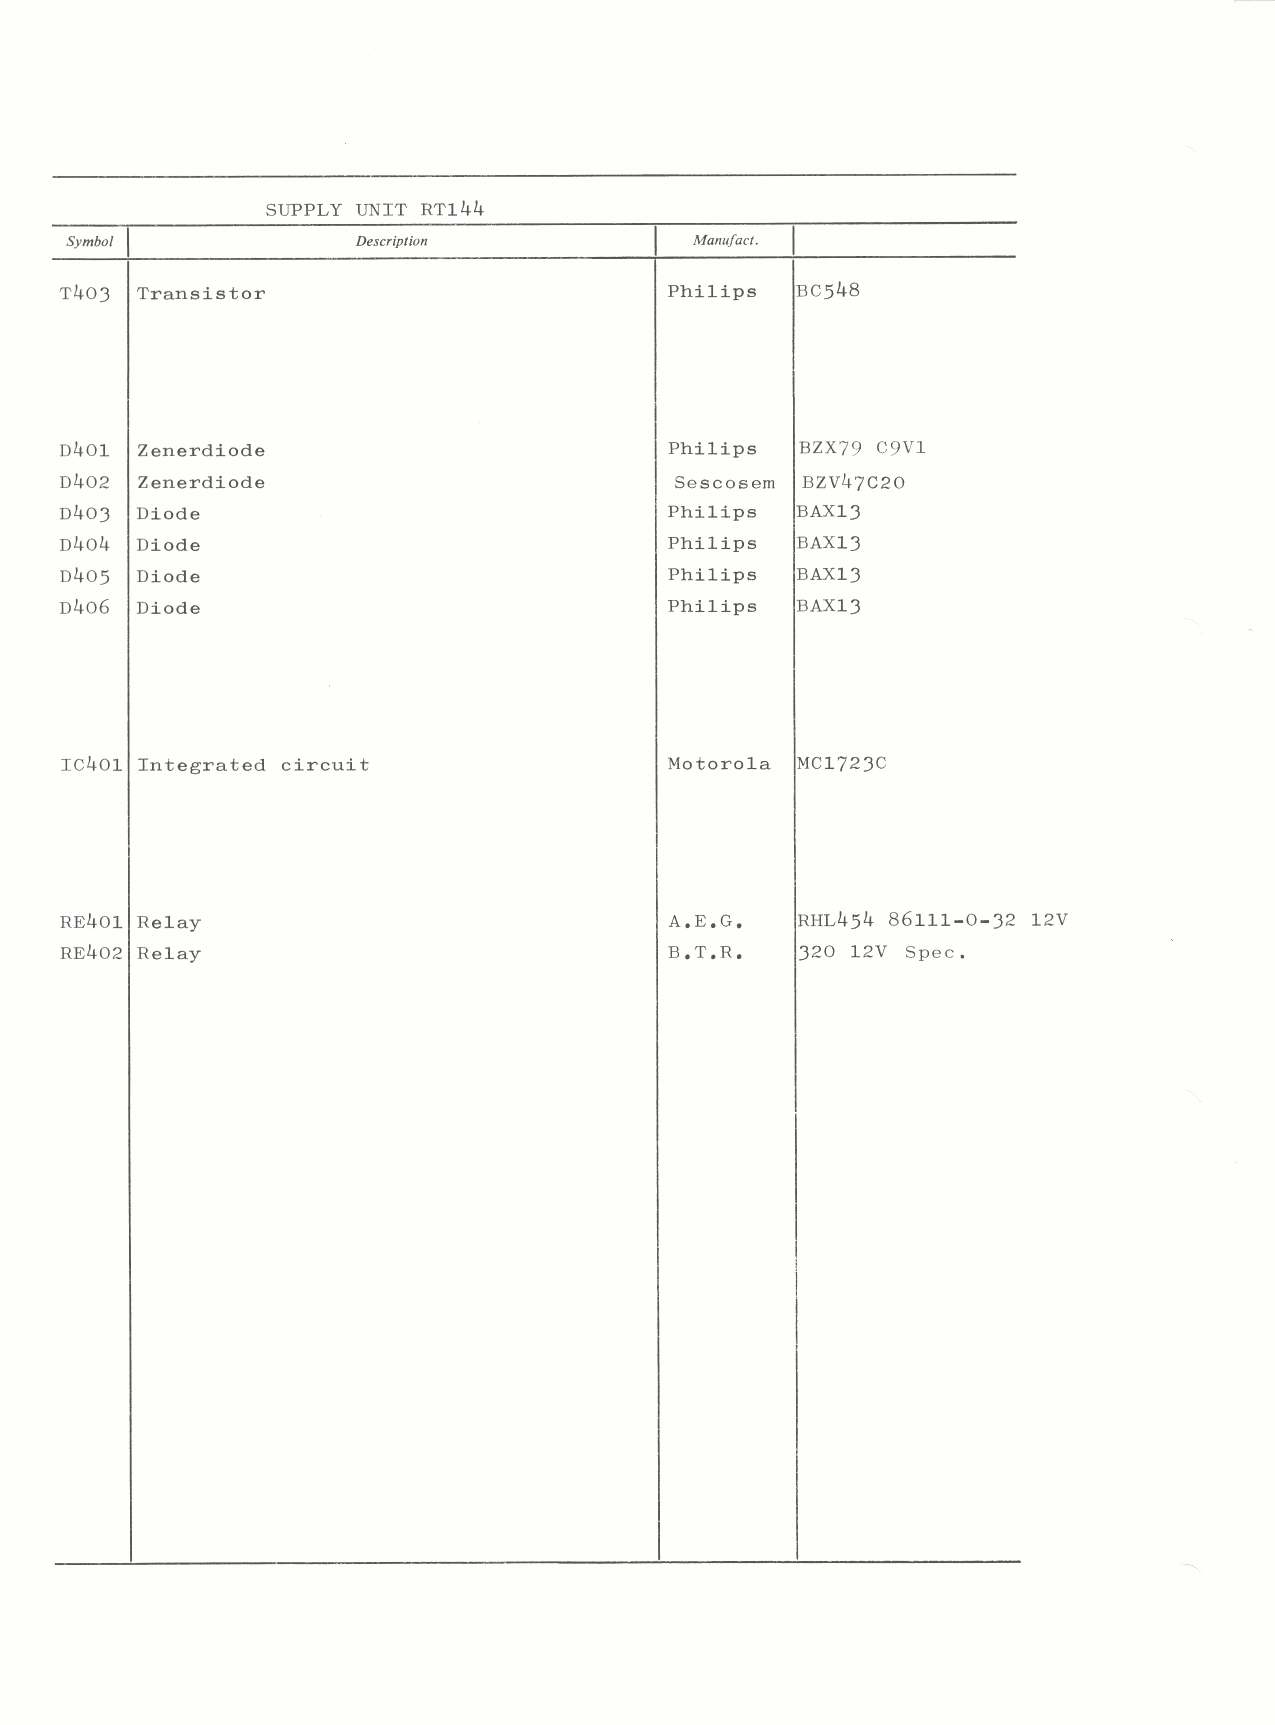 Supply-unit part list-2